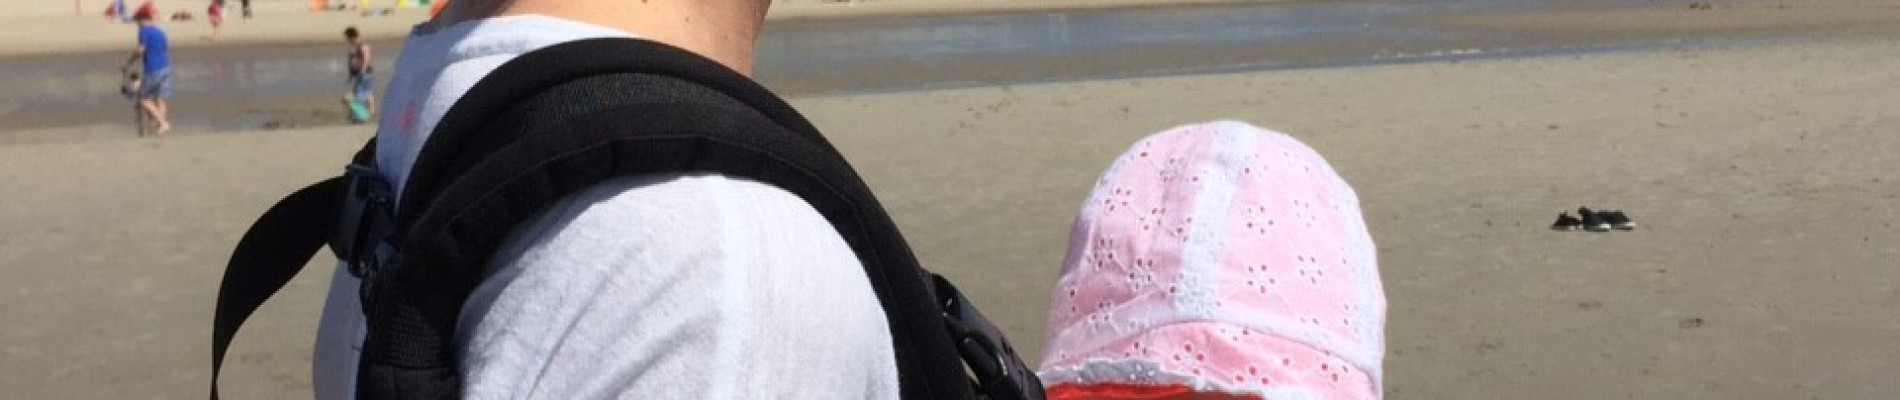 Anneloes kijkt uit op het strand met haar baby in een draagzak op haar buik